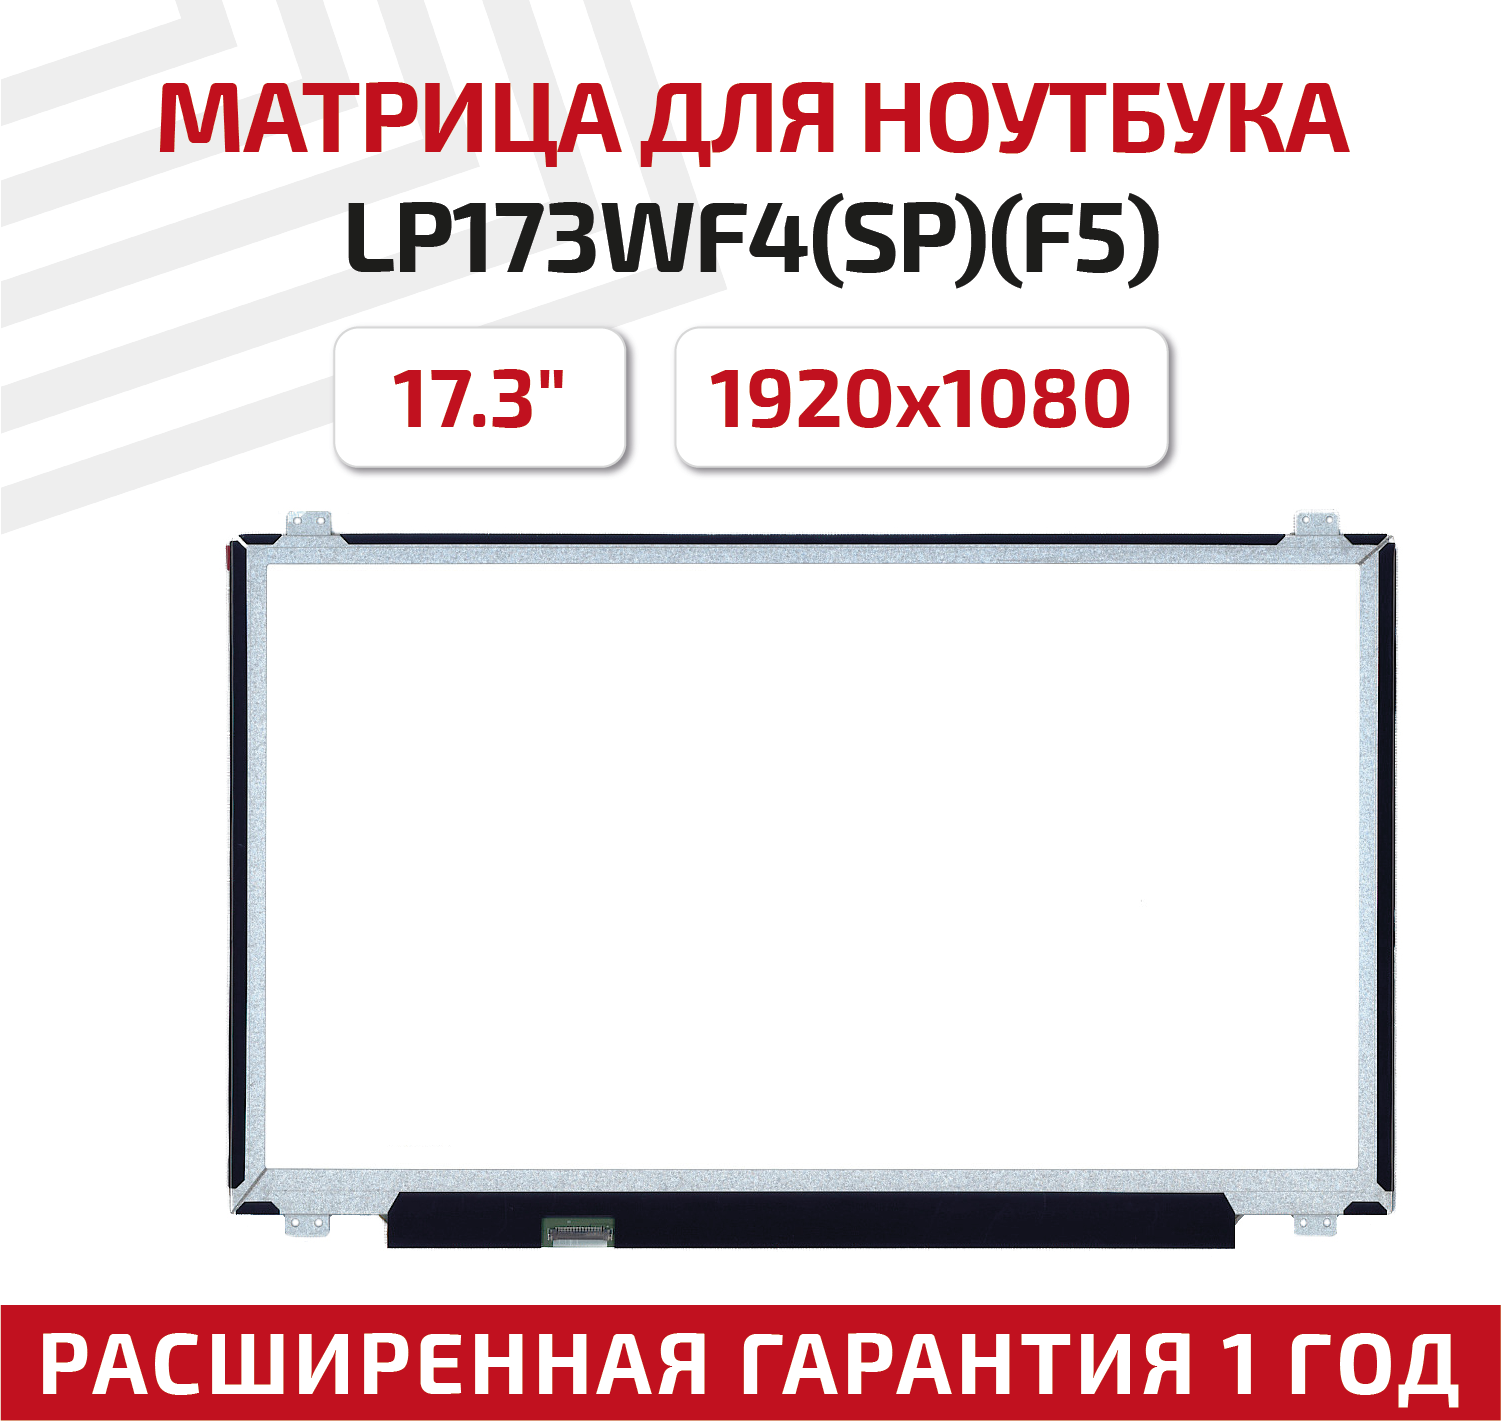 Матрица (экран) для ноутбука LP173WF4(SP)(F5), 17.3", 1920x1080, Slim (тонкая), 30-pin, светодиодная (LED), матовая